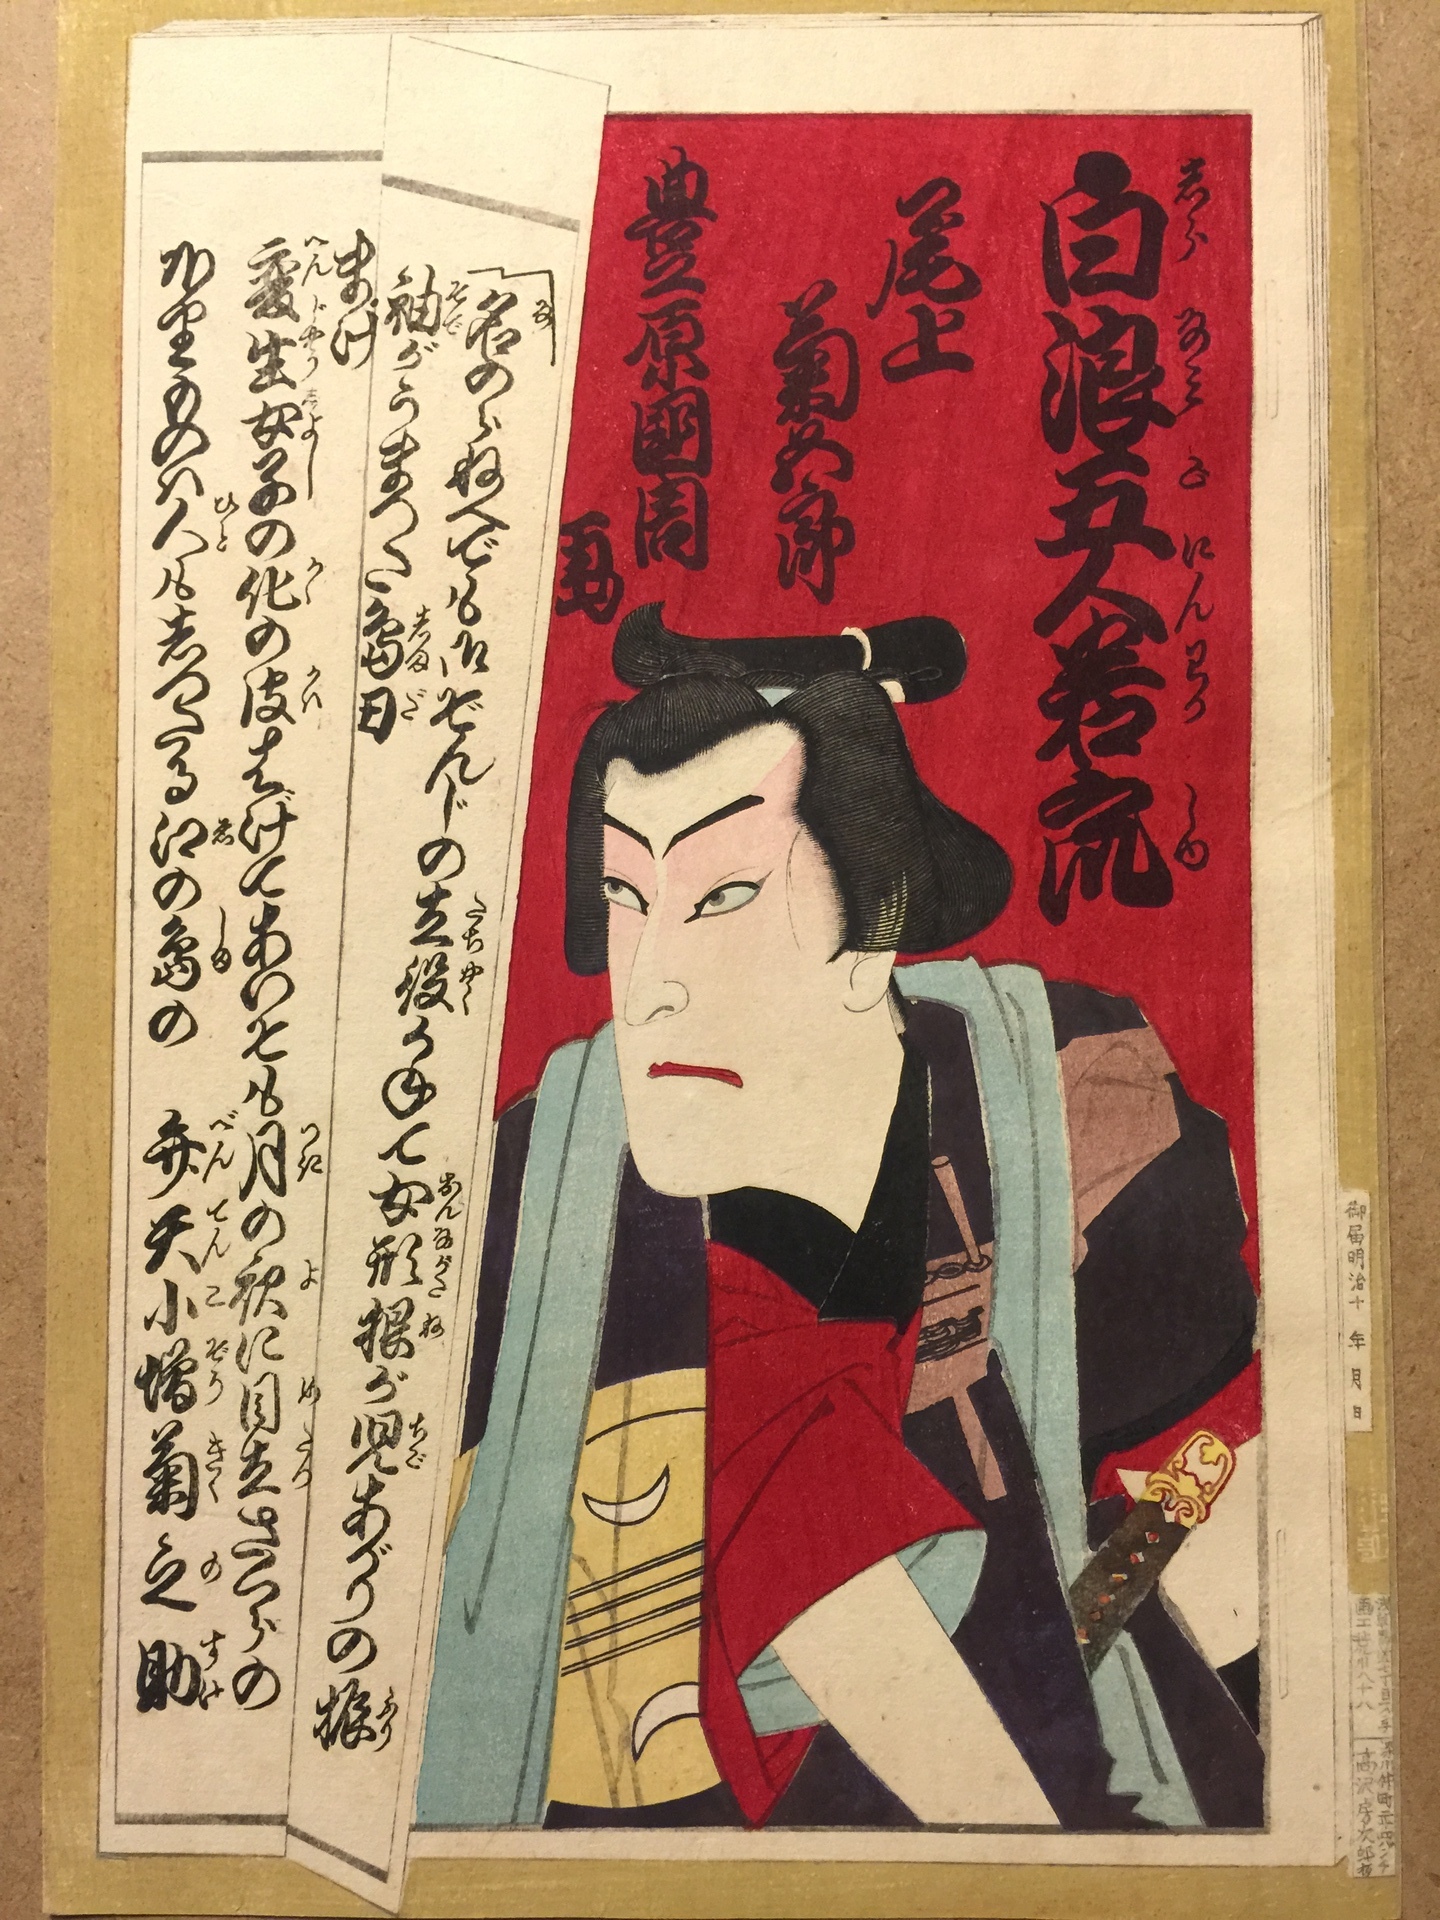 江戸時代の歌舞伎を知るなら やはり大衆演劇が一番 若衆文化研究会